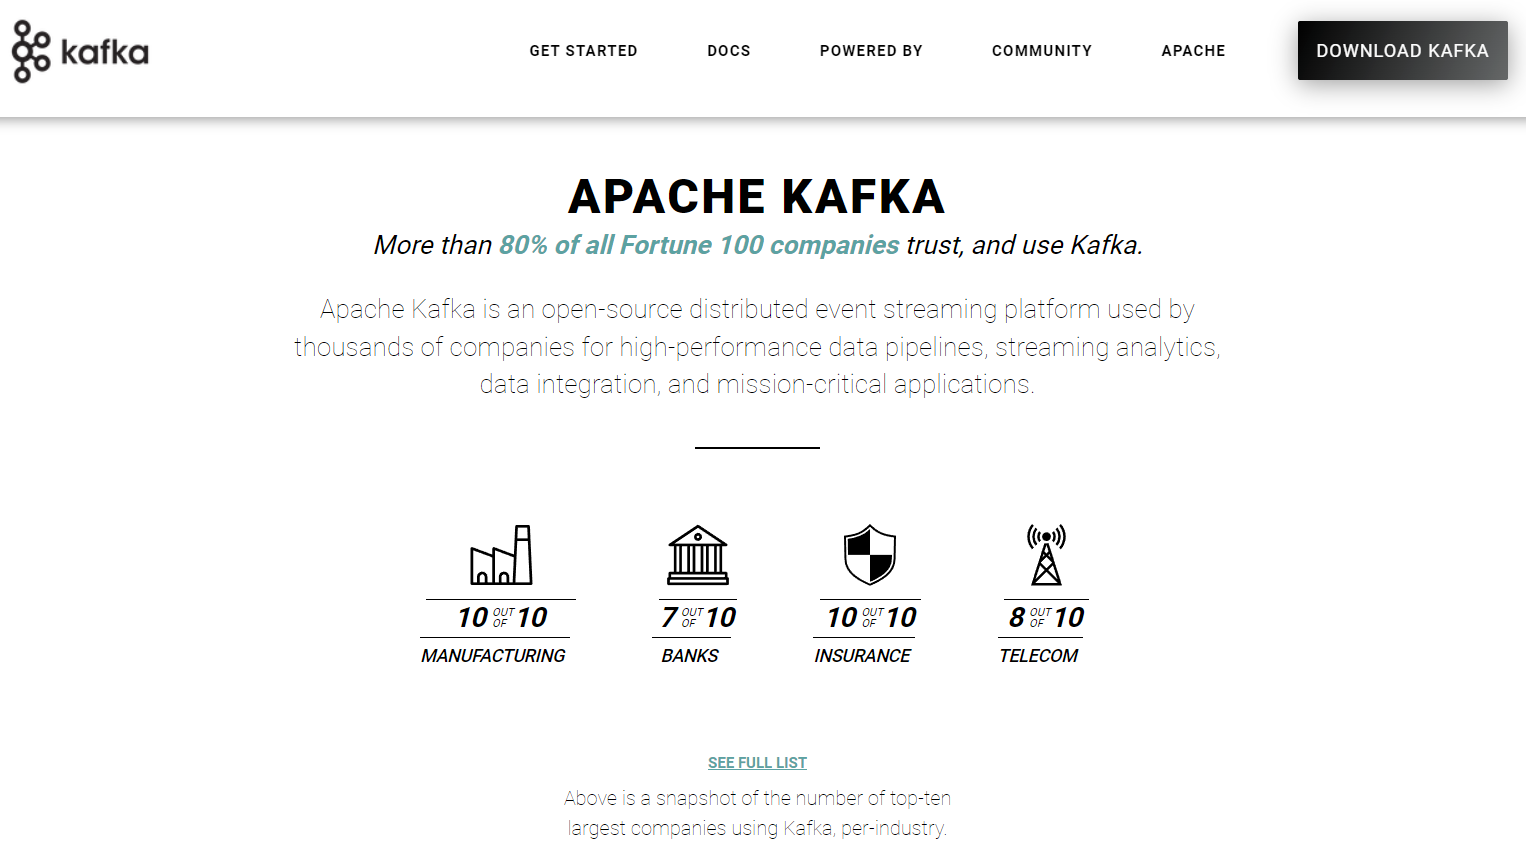 Baza podatkov Apache Kafka